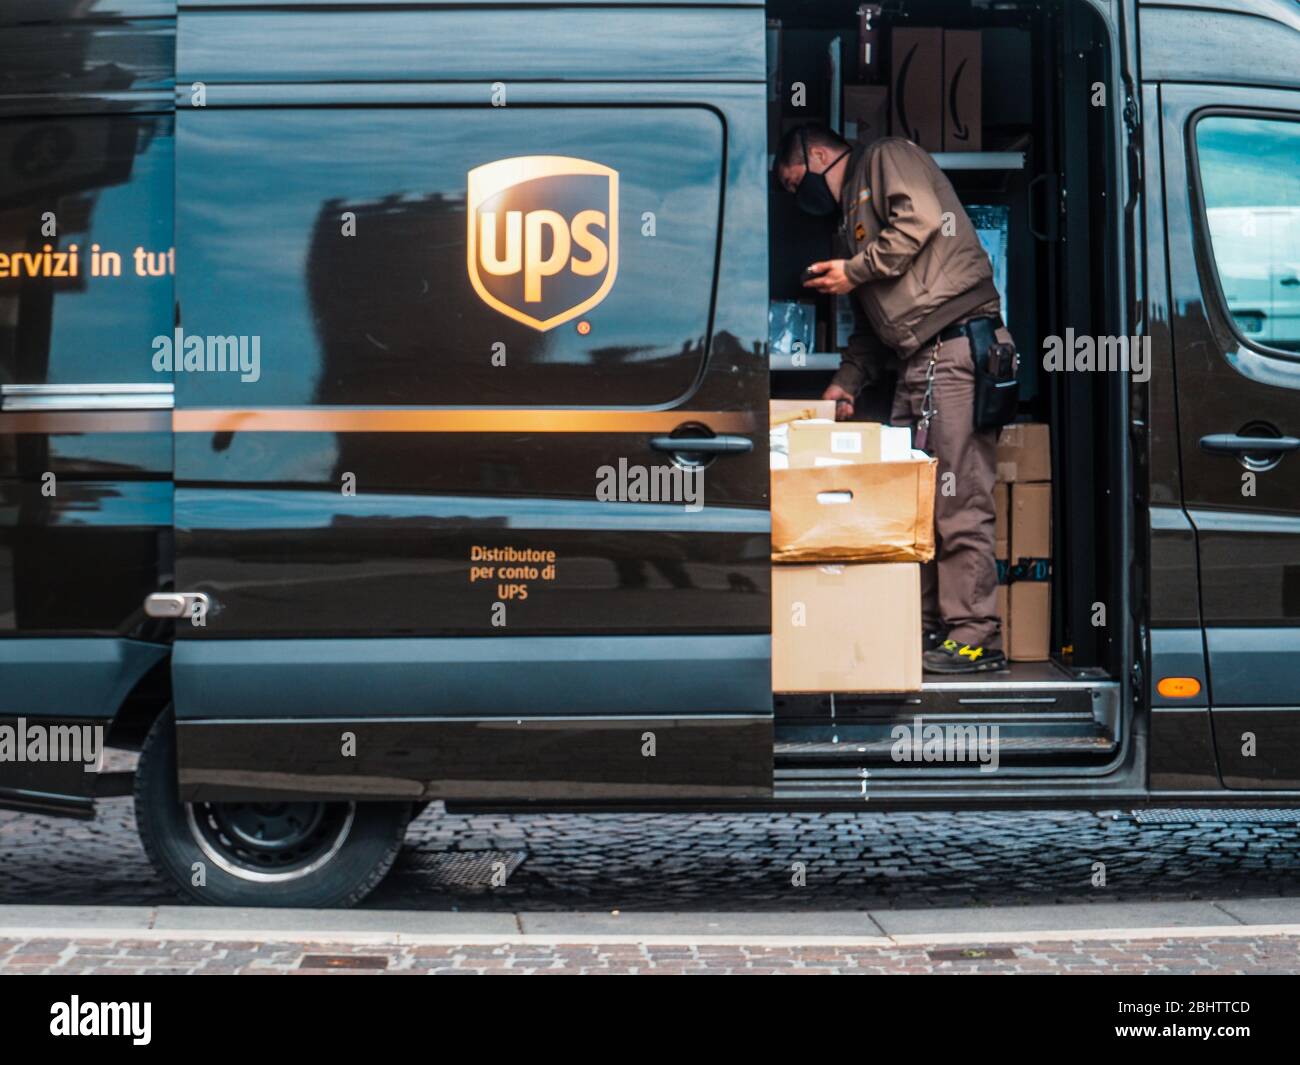 Cremona, Lombardei, Italien - 26. Und 27. April 2020 - ein UPS-Kurier liefert Pakete und Letterrs in einer verlassenen Stadt während des Coronavirus-Ausbruchs lo Stockfoto